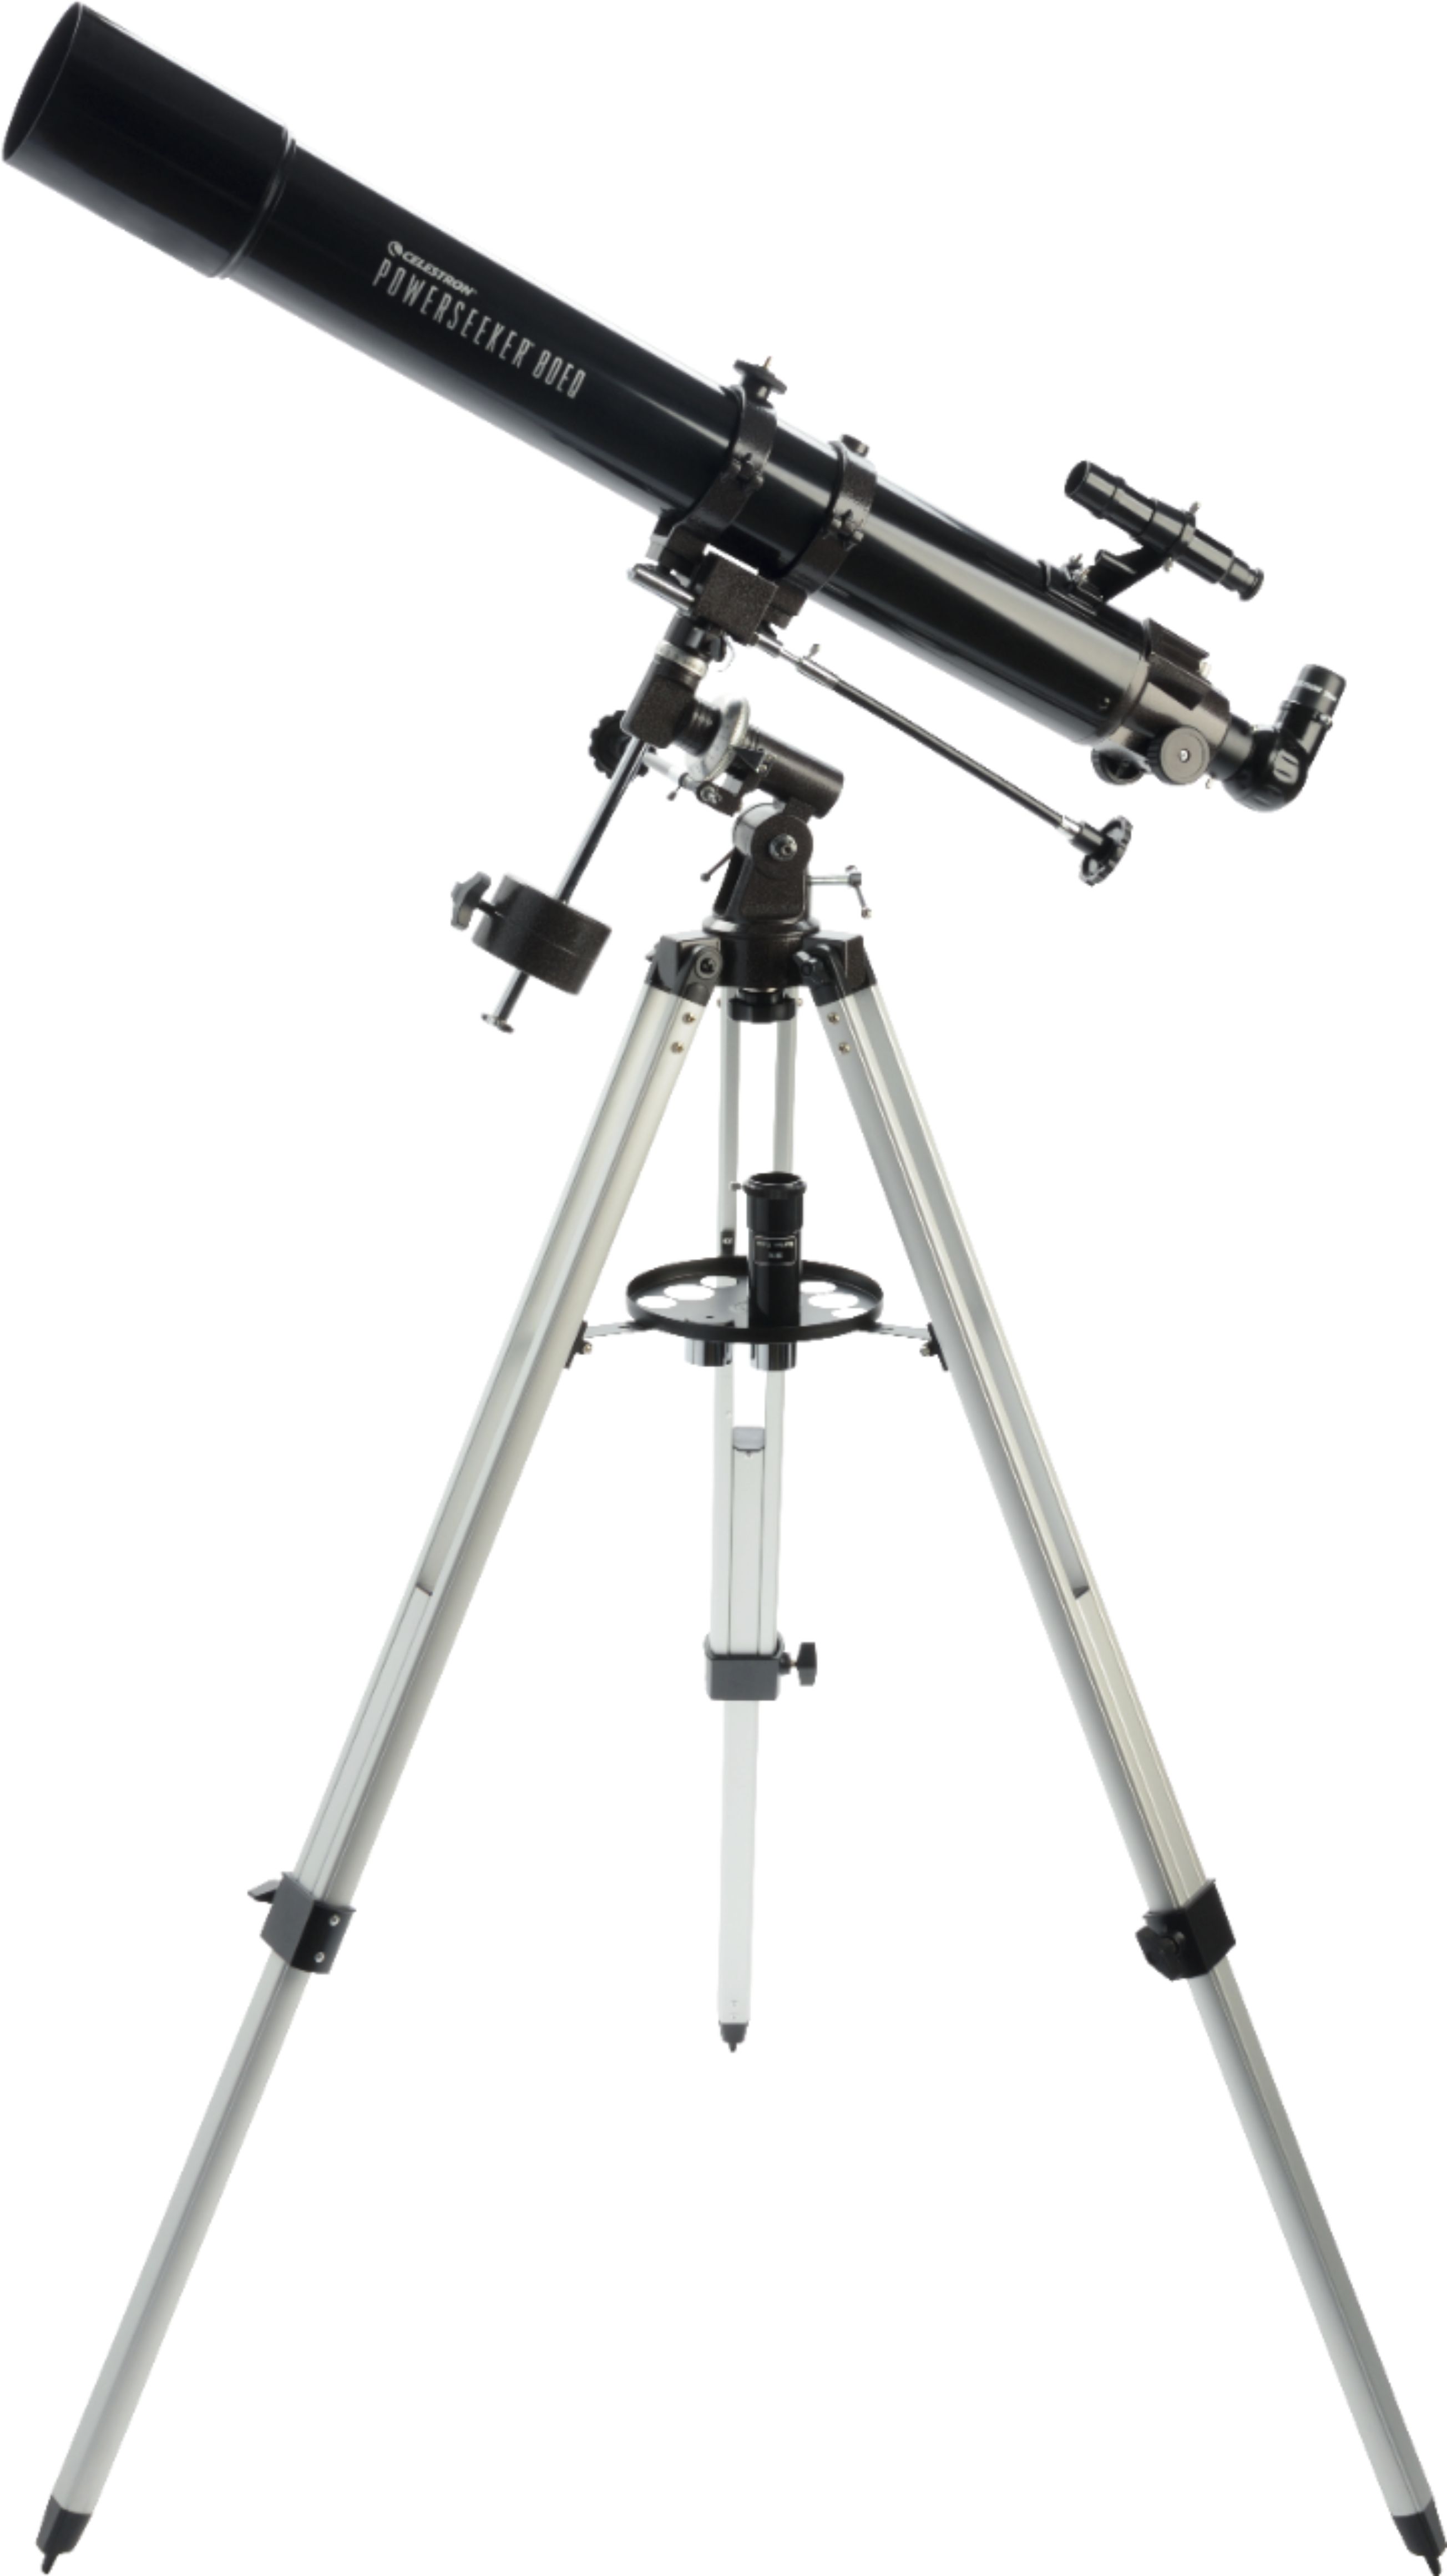 Celestron - PowerSeeker 80mm Refractor Telescope - Black